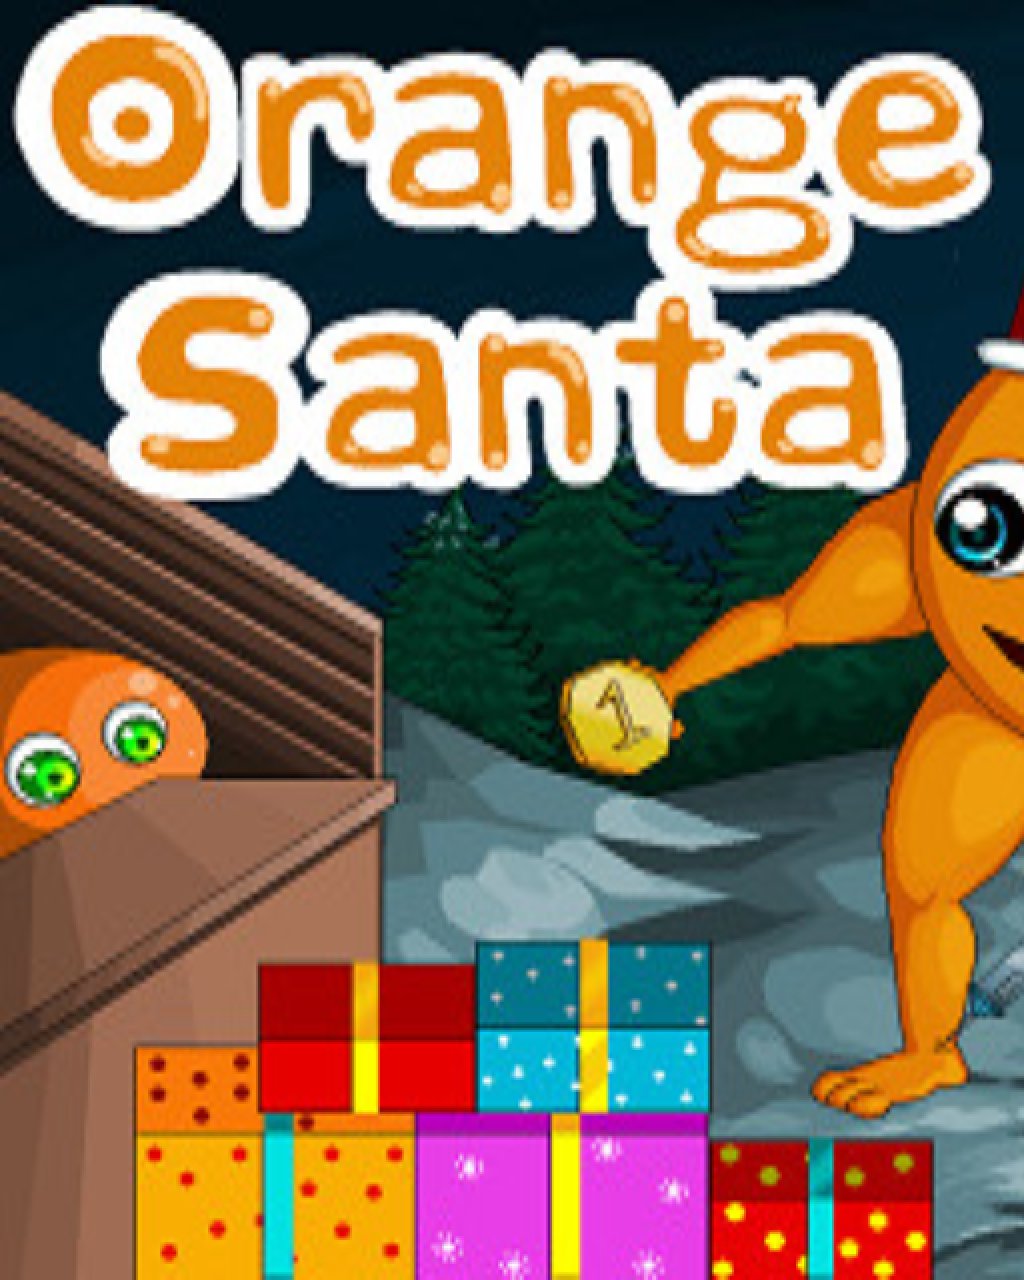 ESD Orange Santa